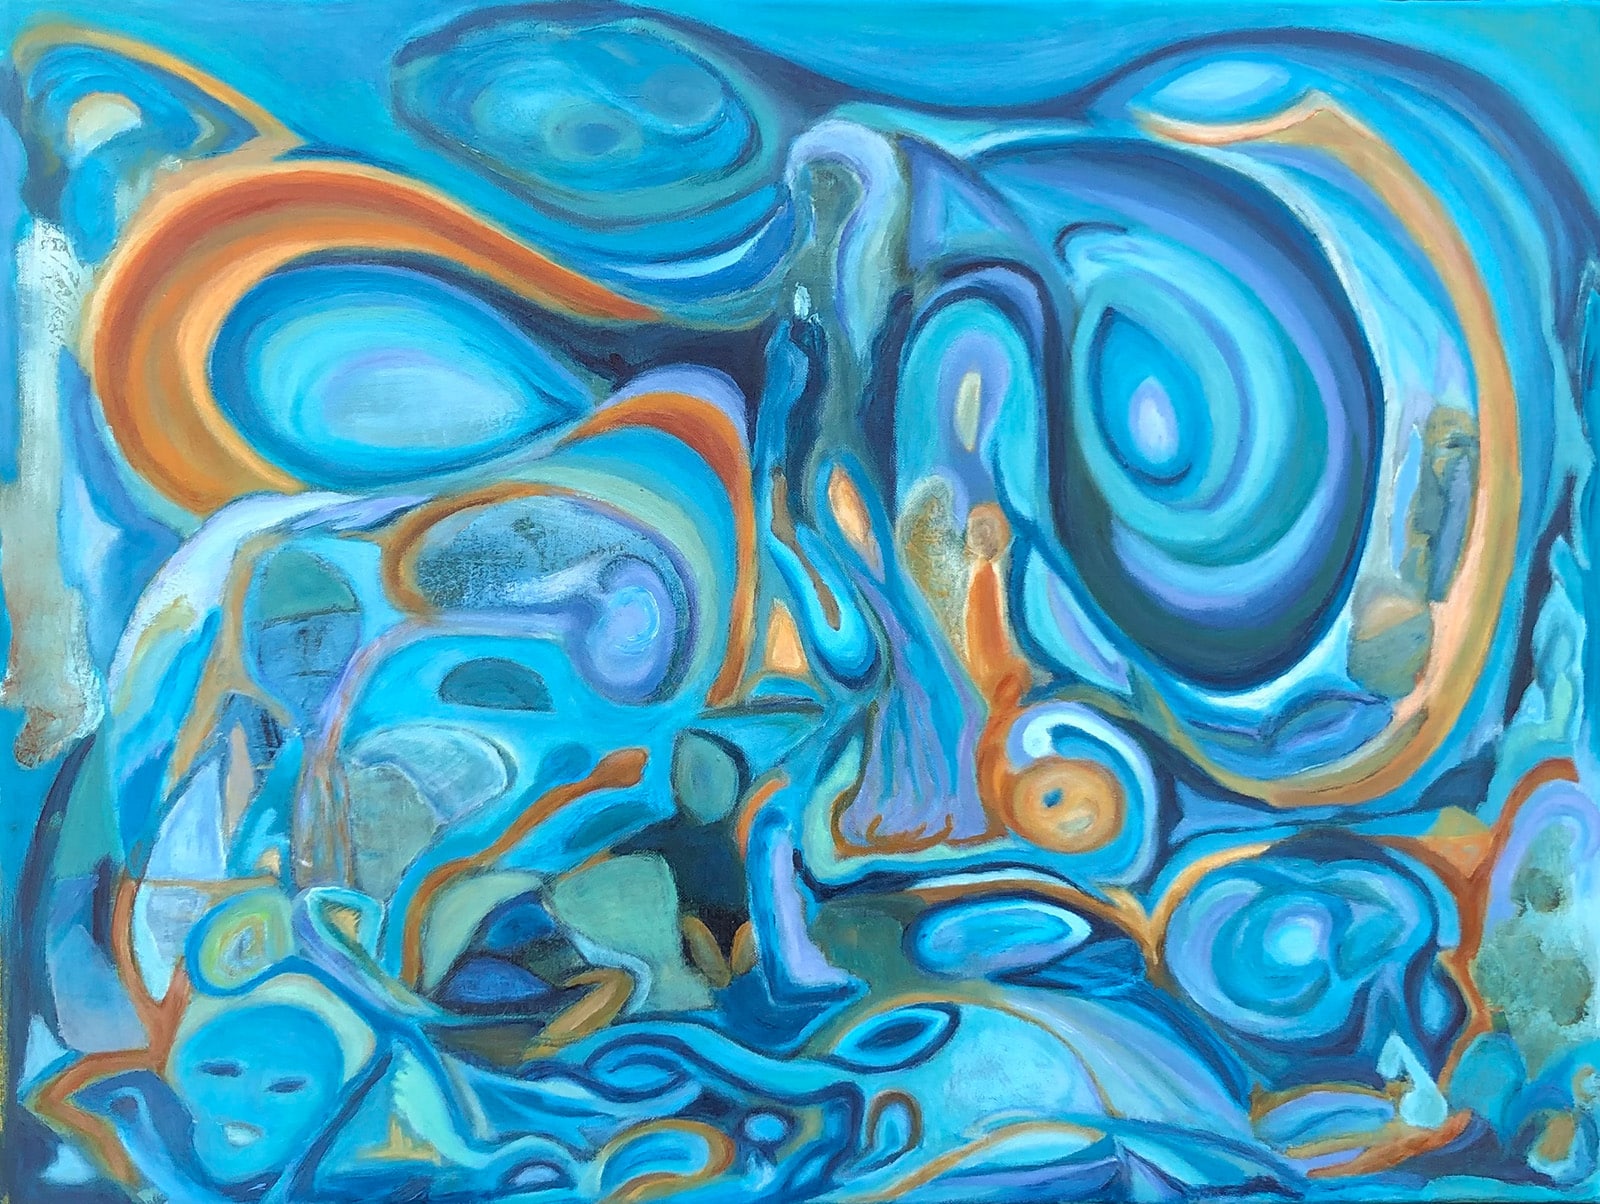 "Energy" Acrylic On Canvas, 60"x80" by Kari Veastad